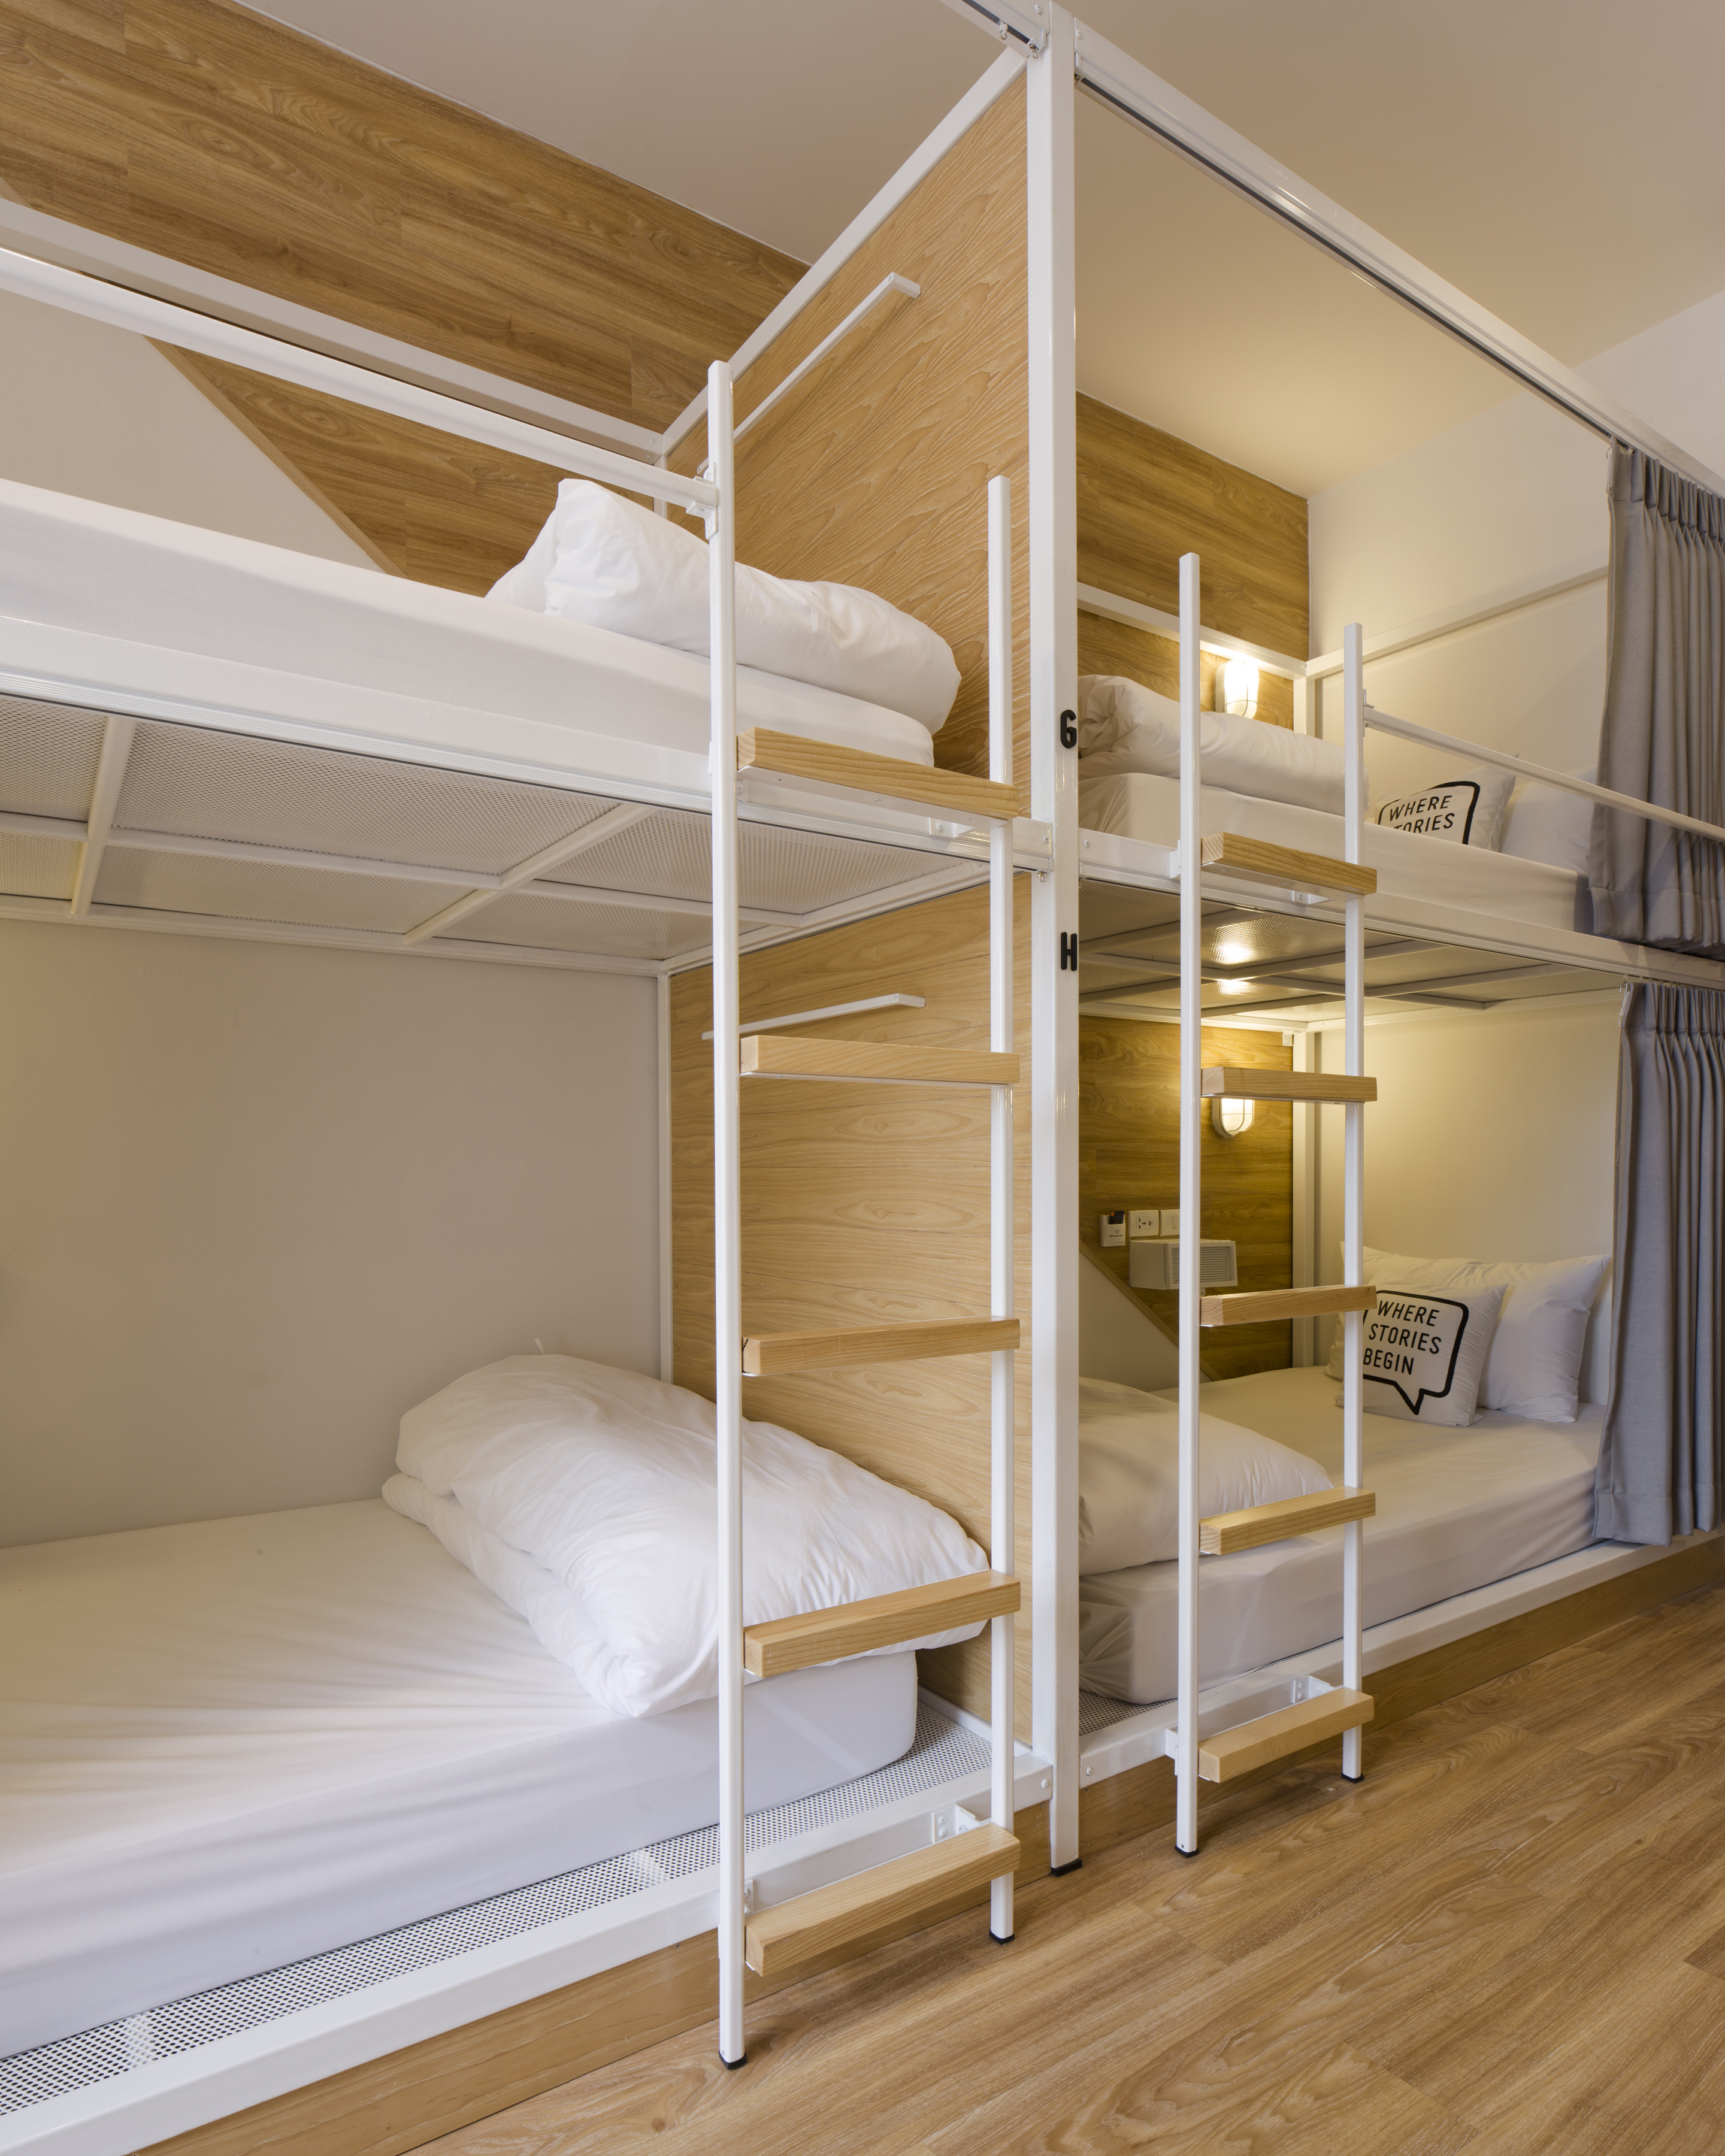 Общежитие на 4 комнаты. Двухъярусная кровать для хостела. Двухъярусные кровати для хостелов. Двухяруснаямкравать для хостолоа. Комната в хостеле.